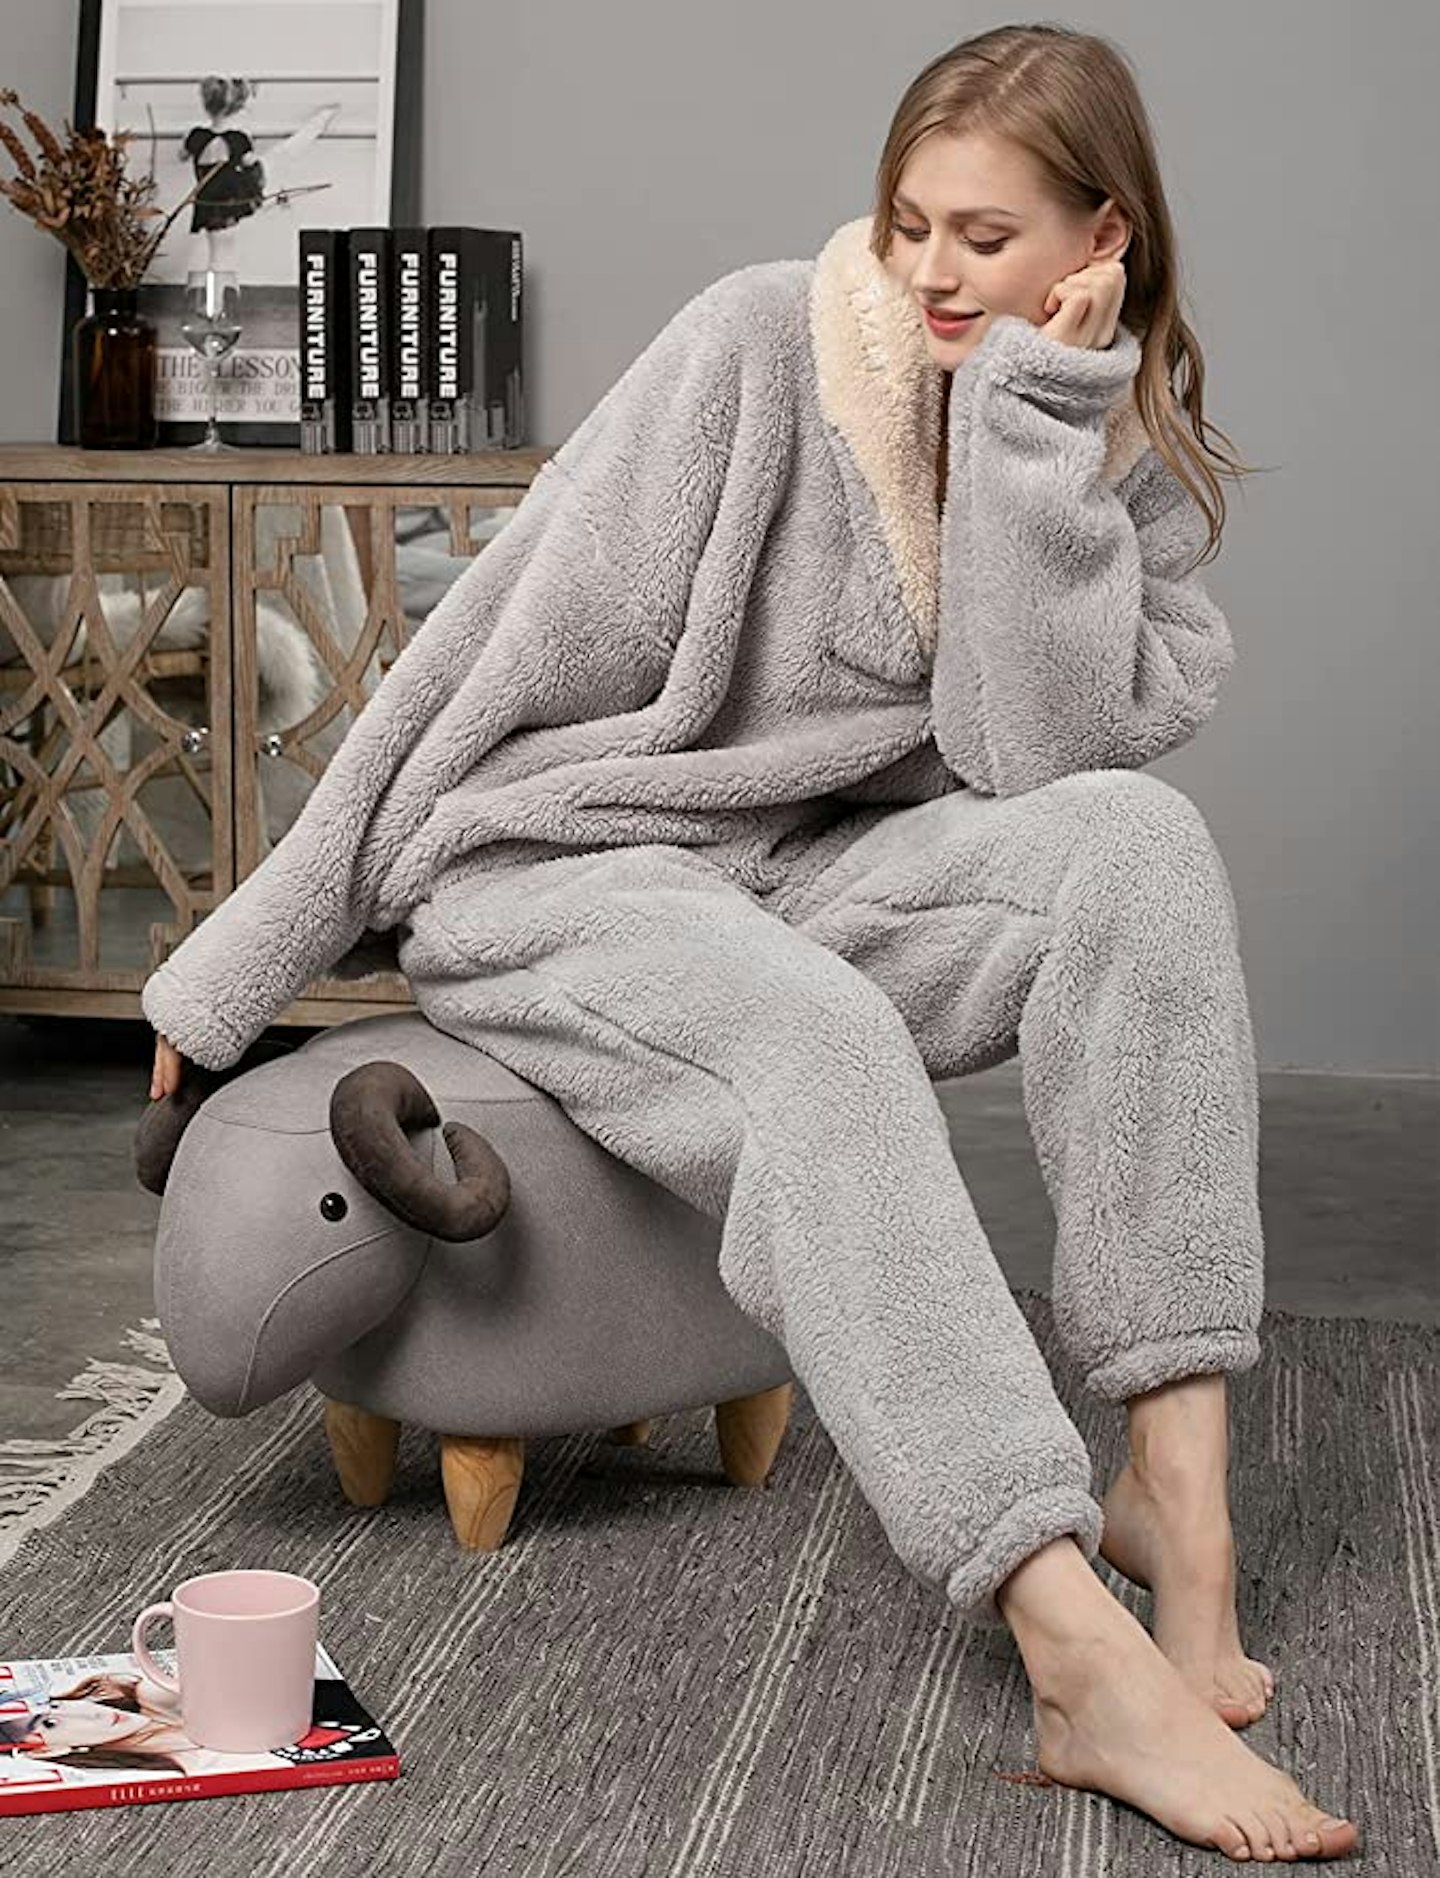 ZAPZEAL Fluffy Women's Pyjama Set